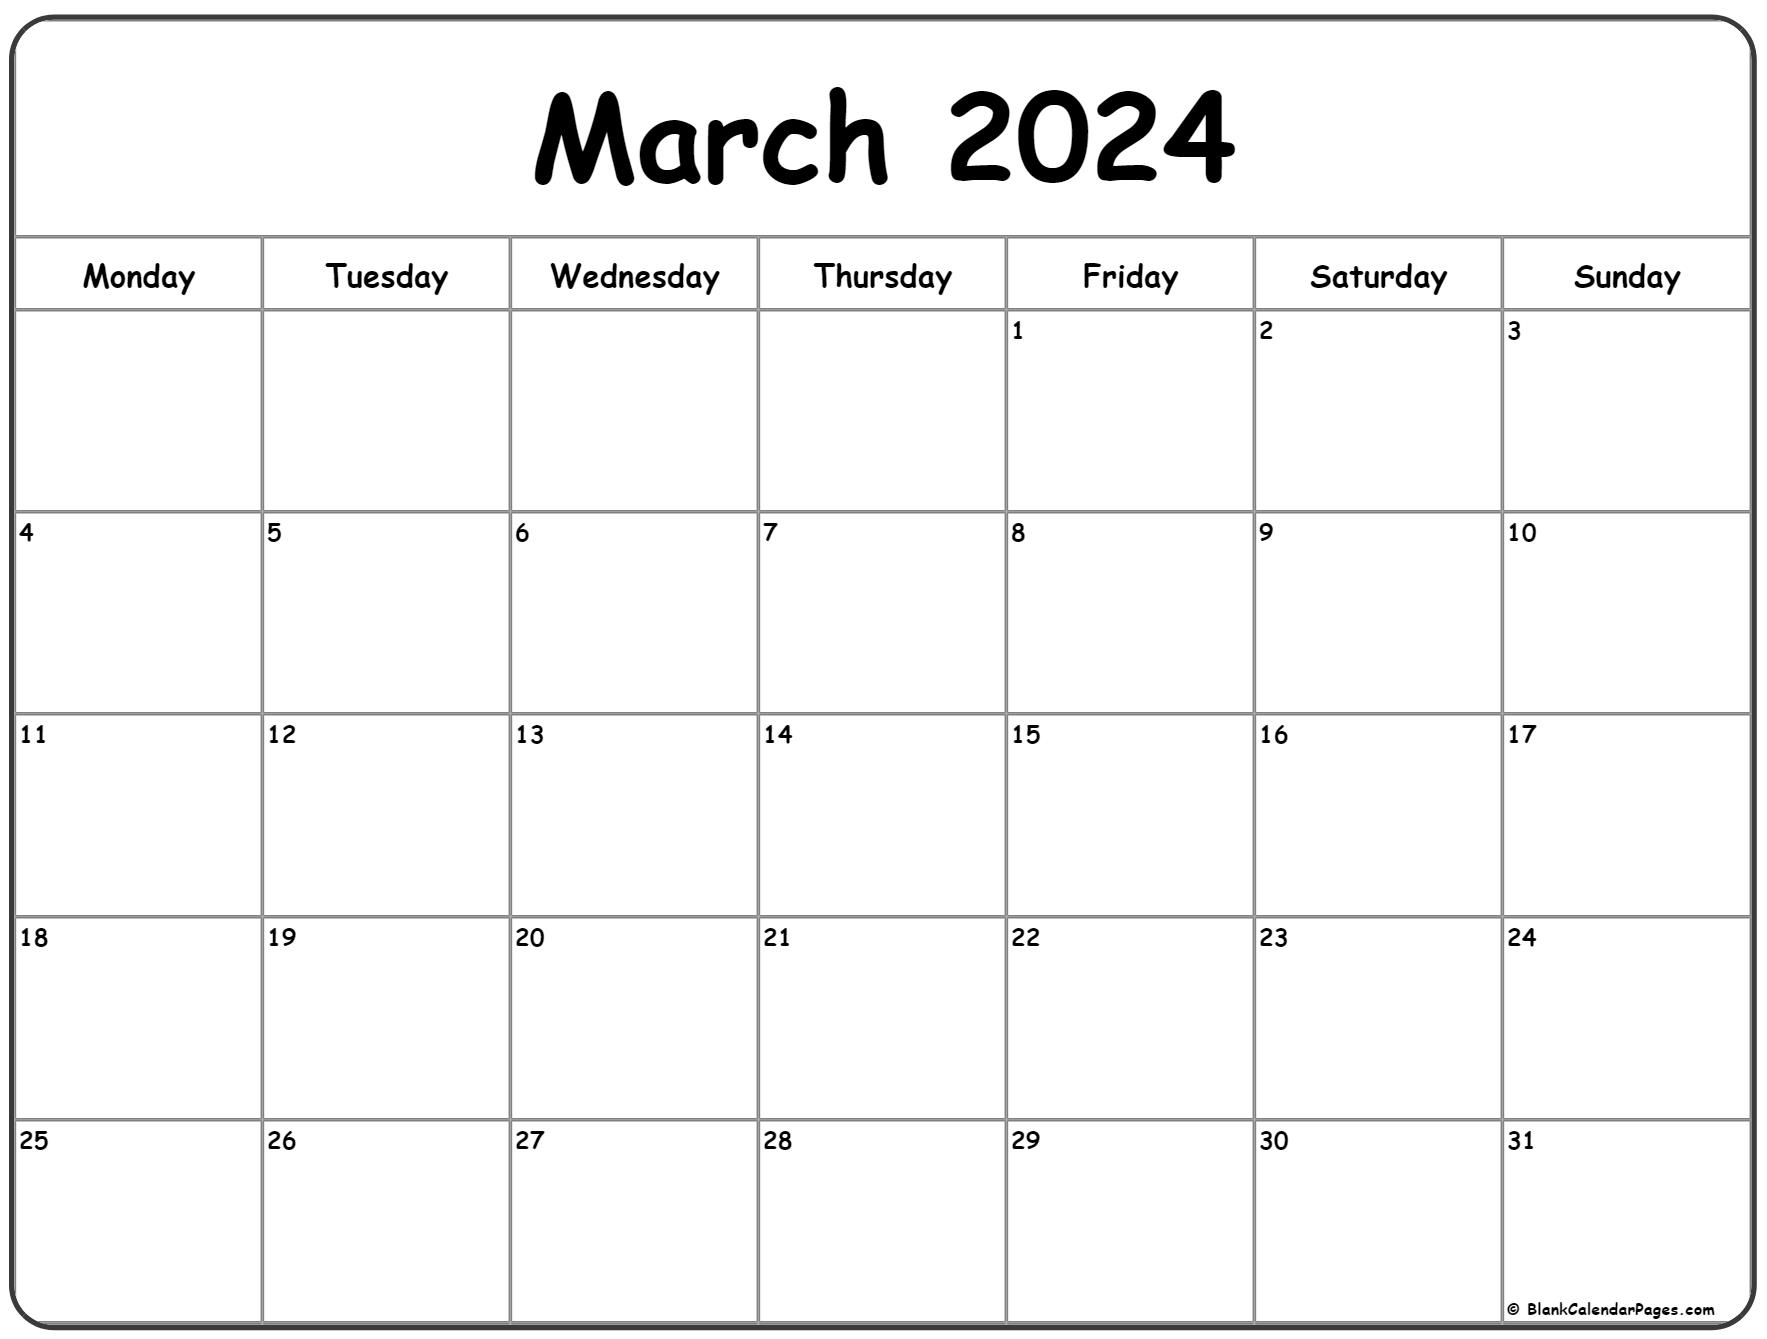 March 2024 Monday Calendar | Monday To Sunday for A Printable Calendar March 2024